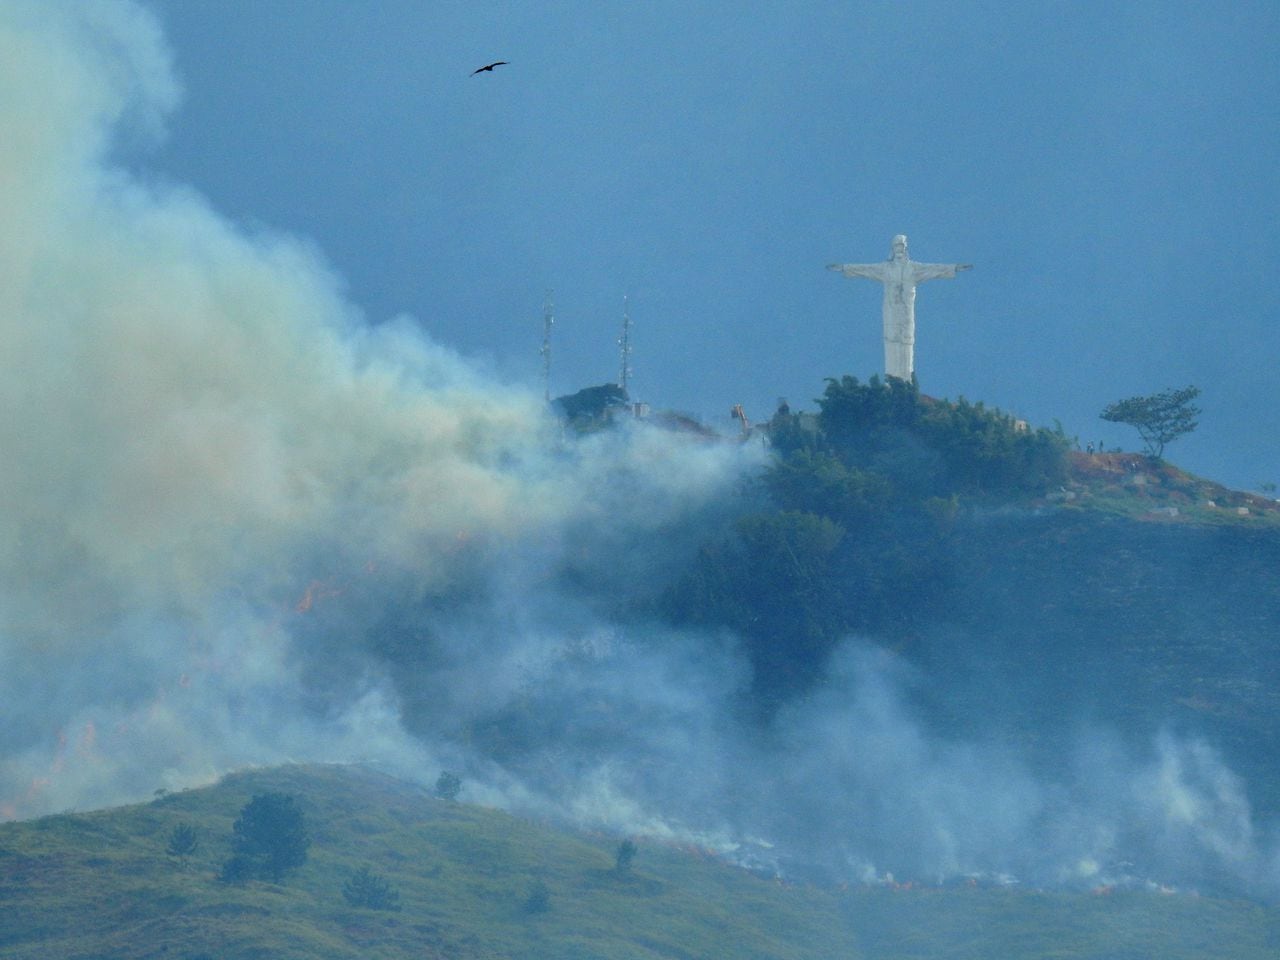 Incendio Forestal en el sector de la Vereda Atenas y el Mameyal, vía a monumento de Cristo Rey.